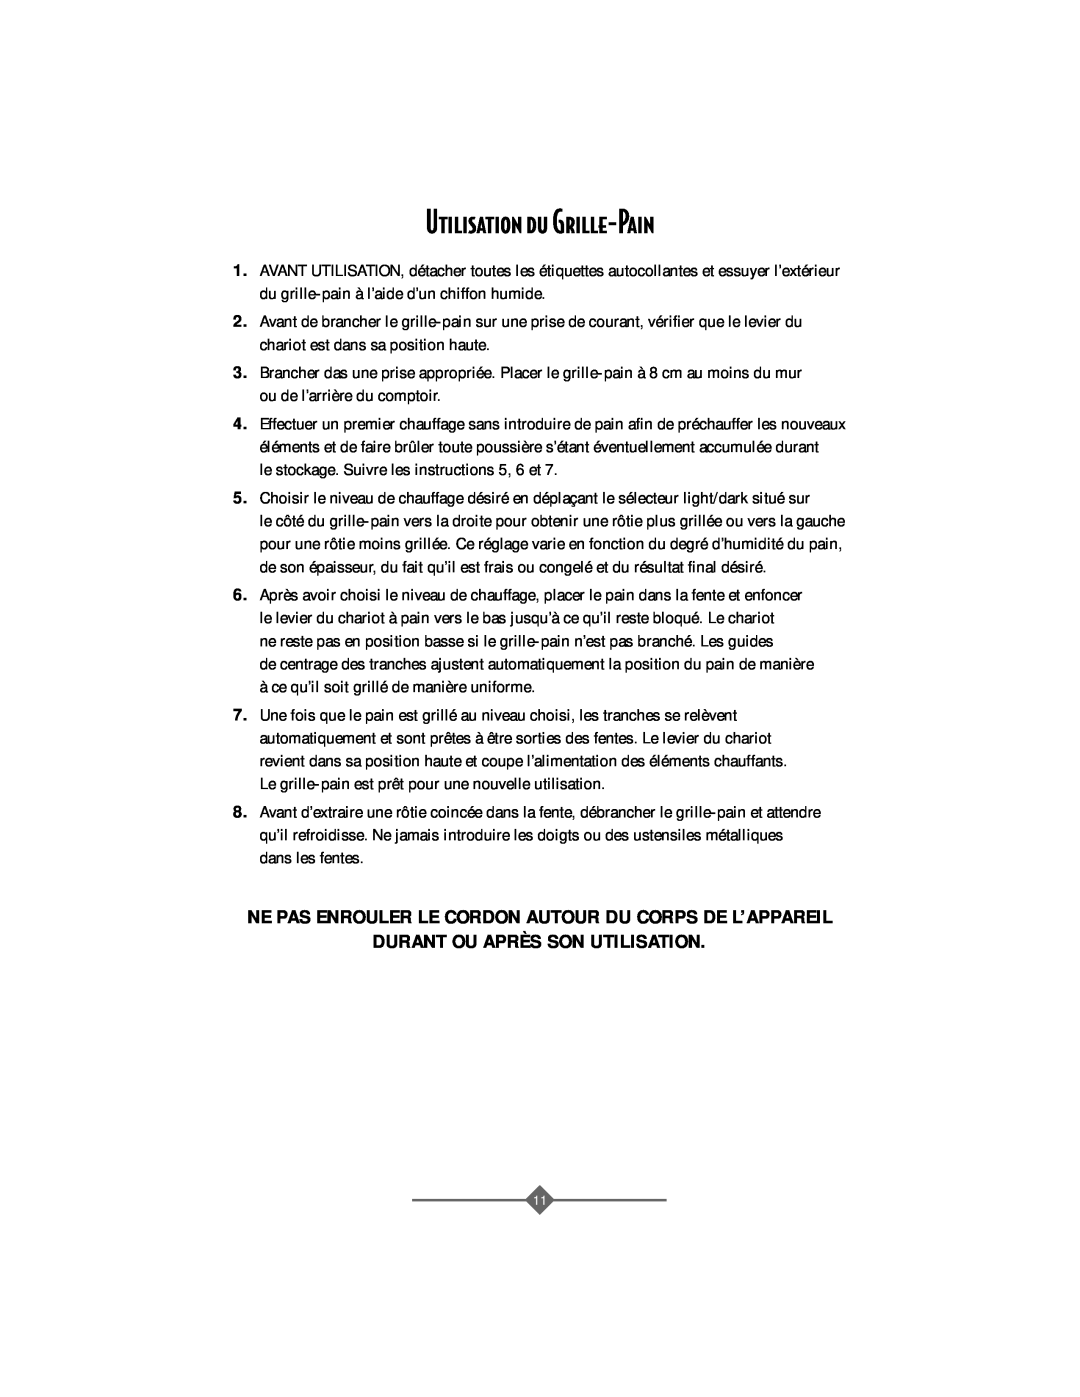 Sunbeam 3806 instruction manual Utilisation du Grille-Pain, Ne Pas Enrouler Le Cordon Autour Du Corps De L’Appareil 